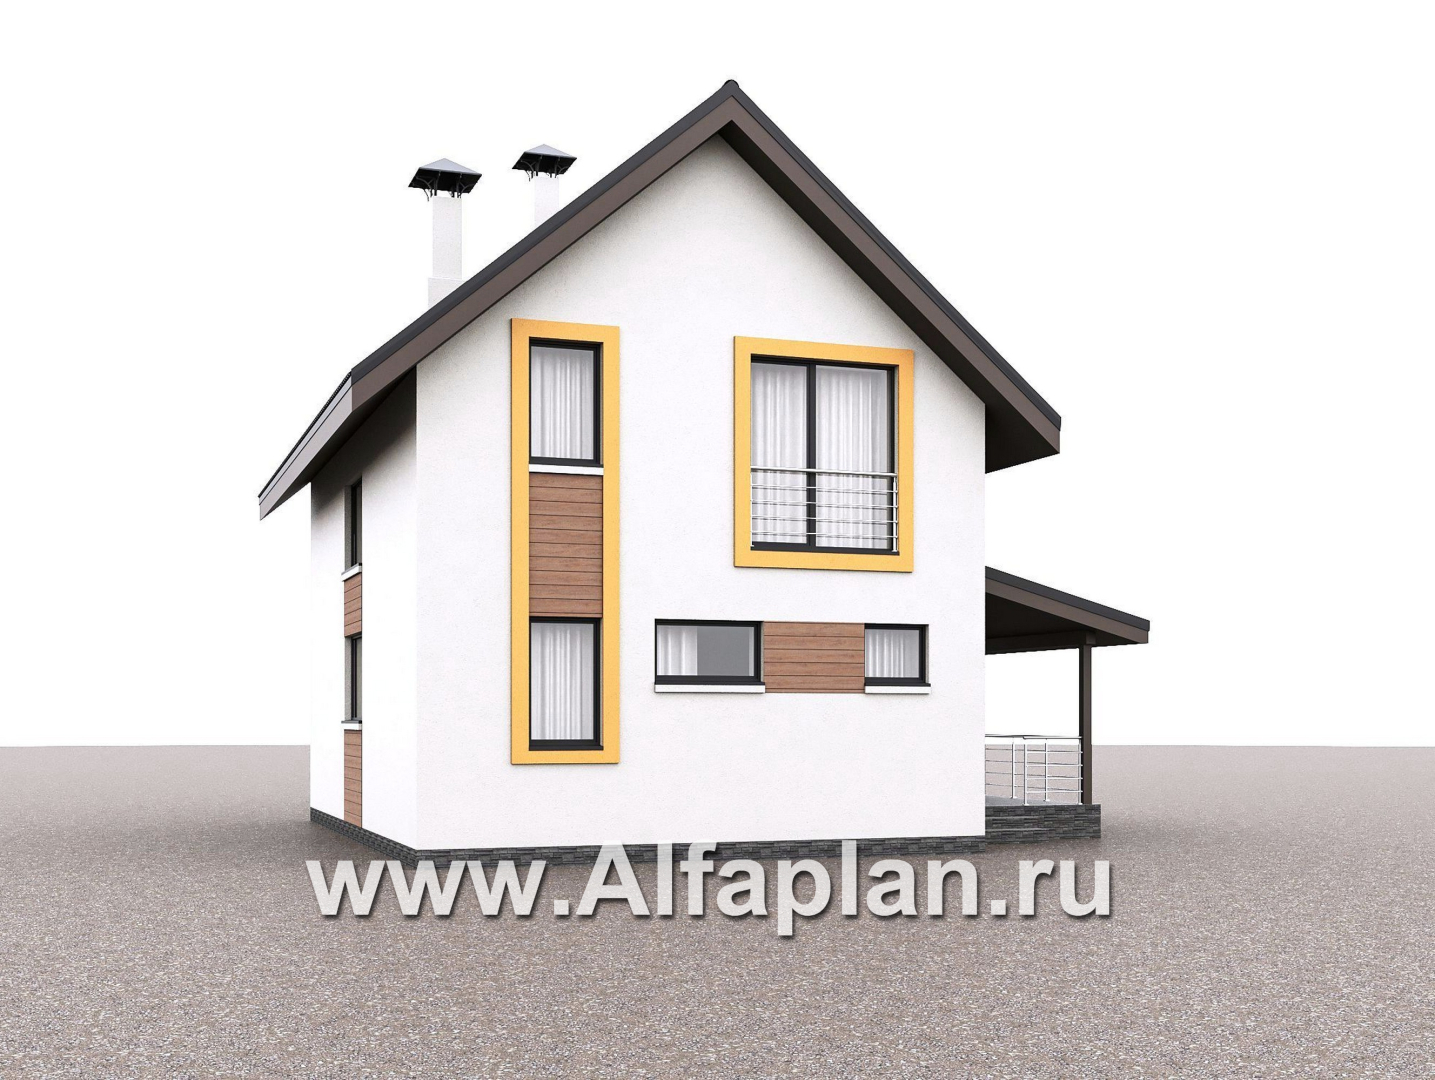 «Викинг» - проект дома, 2 этажа, с сауной и с террасой сбоку, в скандинавском стиле - дизайн дома №1